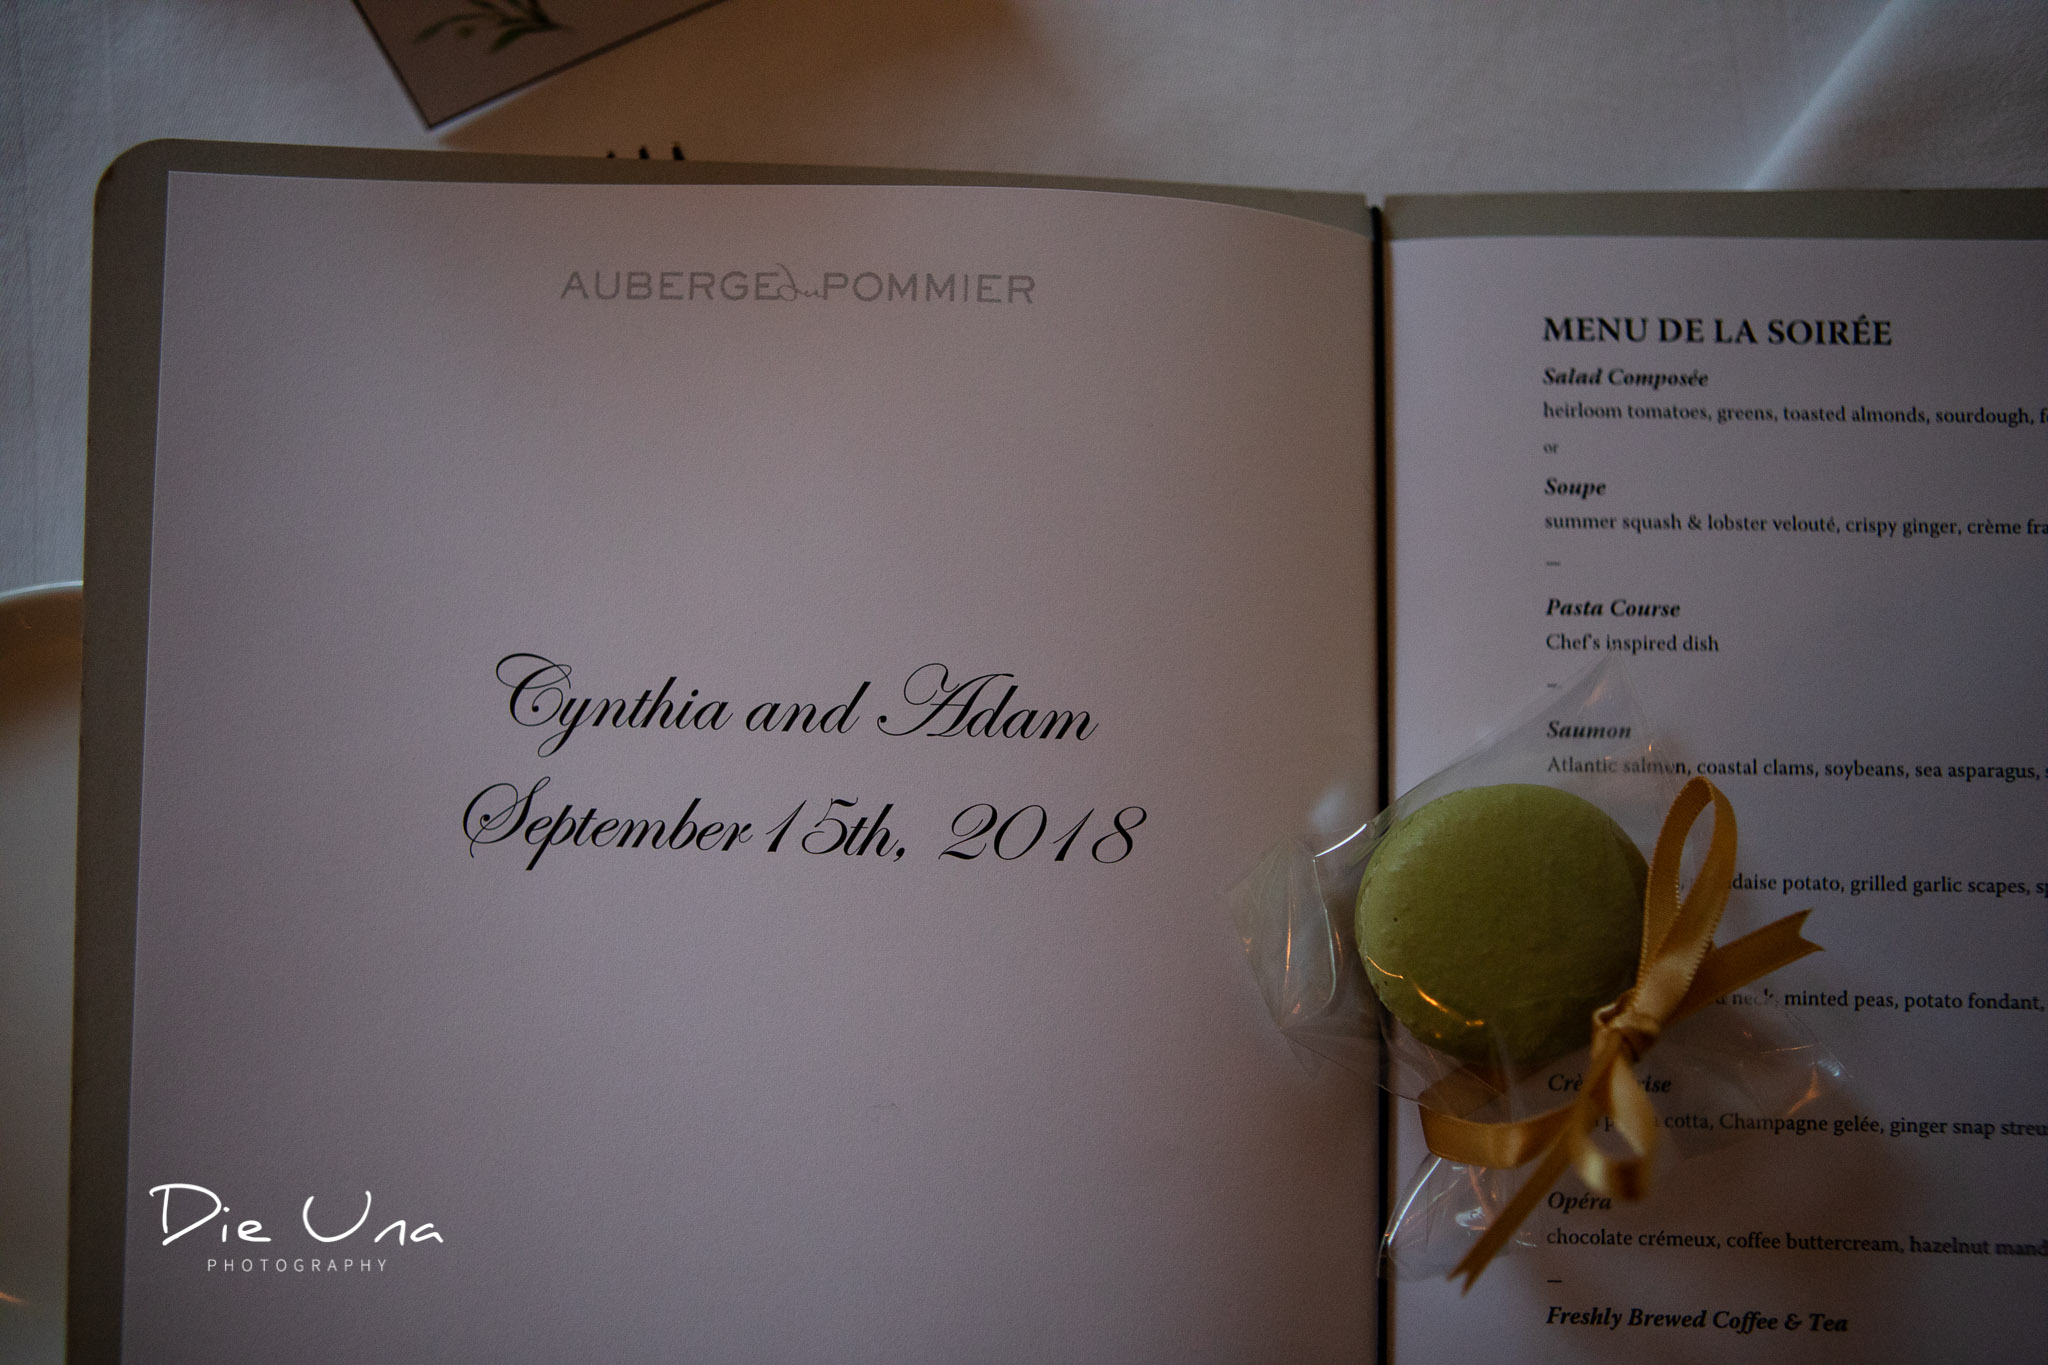 beautiful wedding dinner menu at Auberge du Pommier.jpg